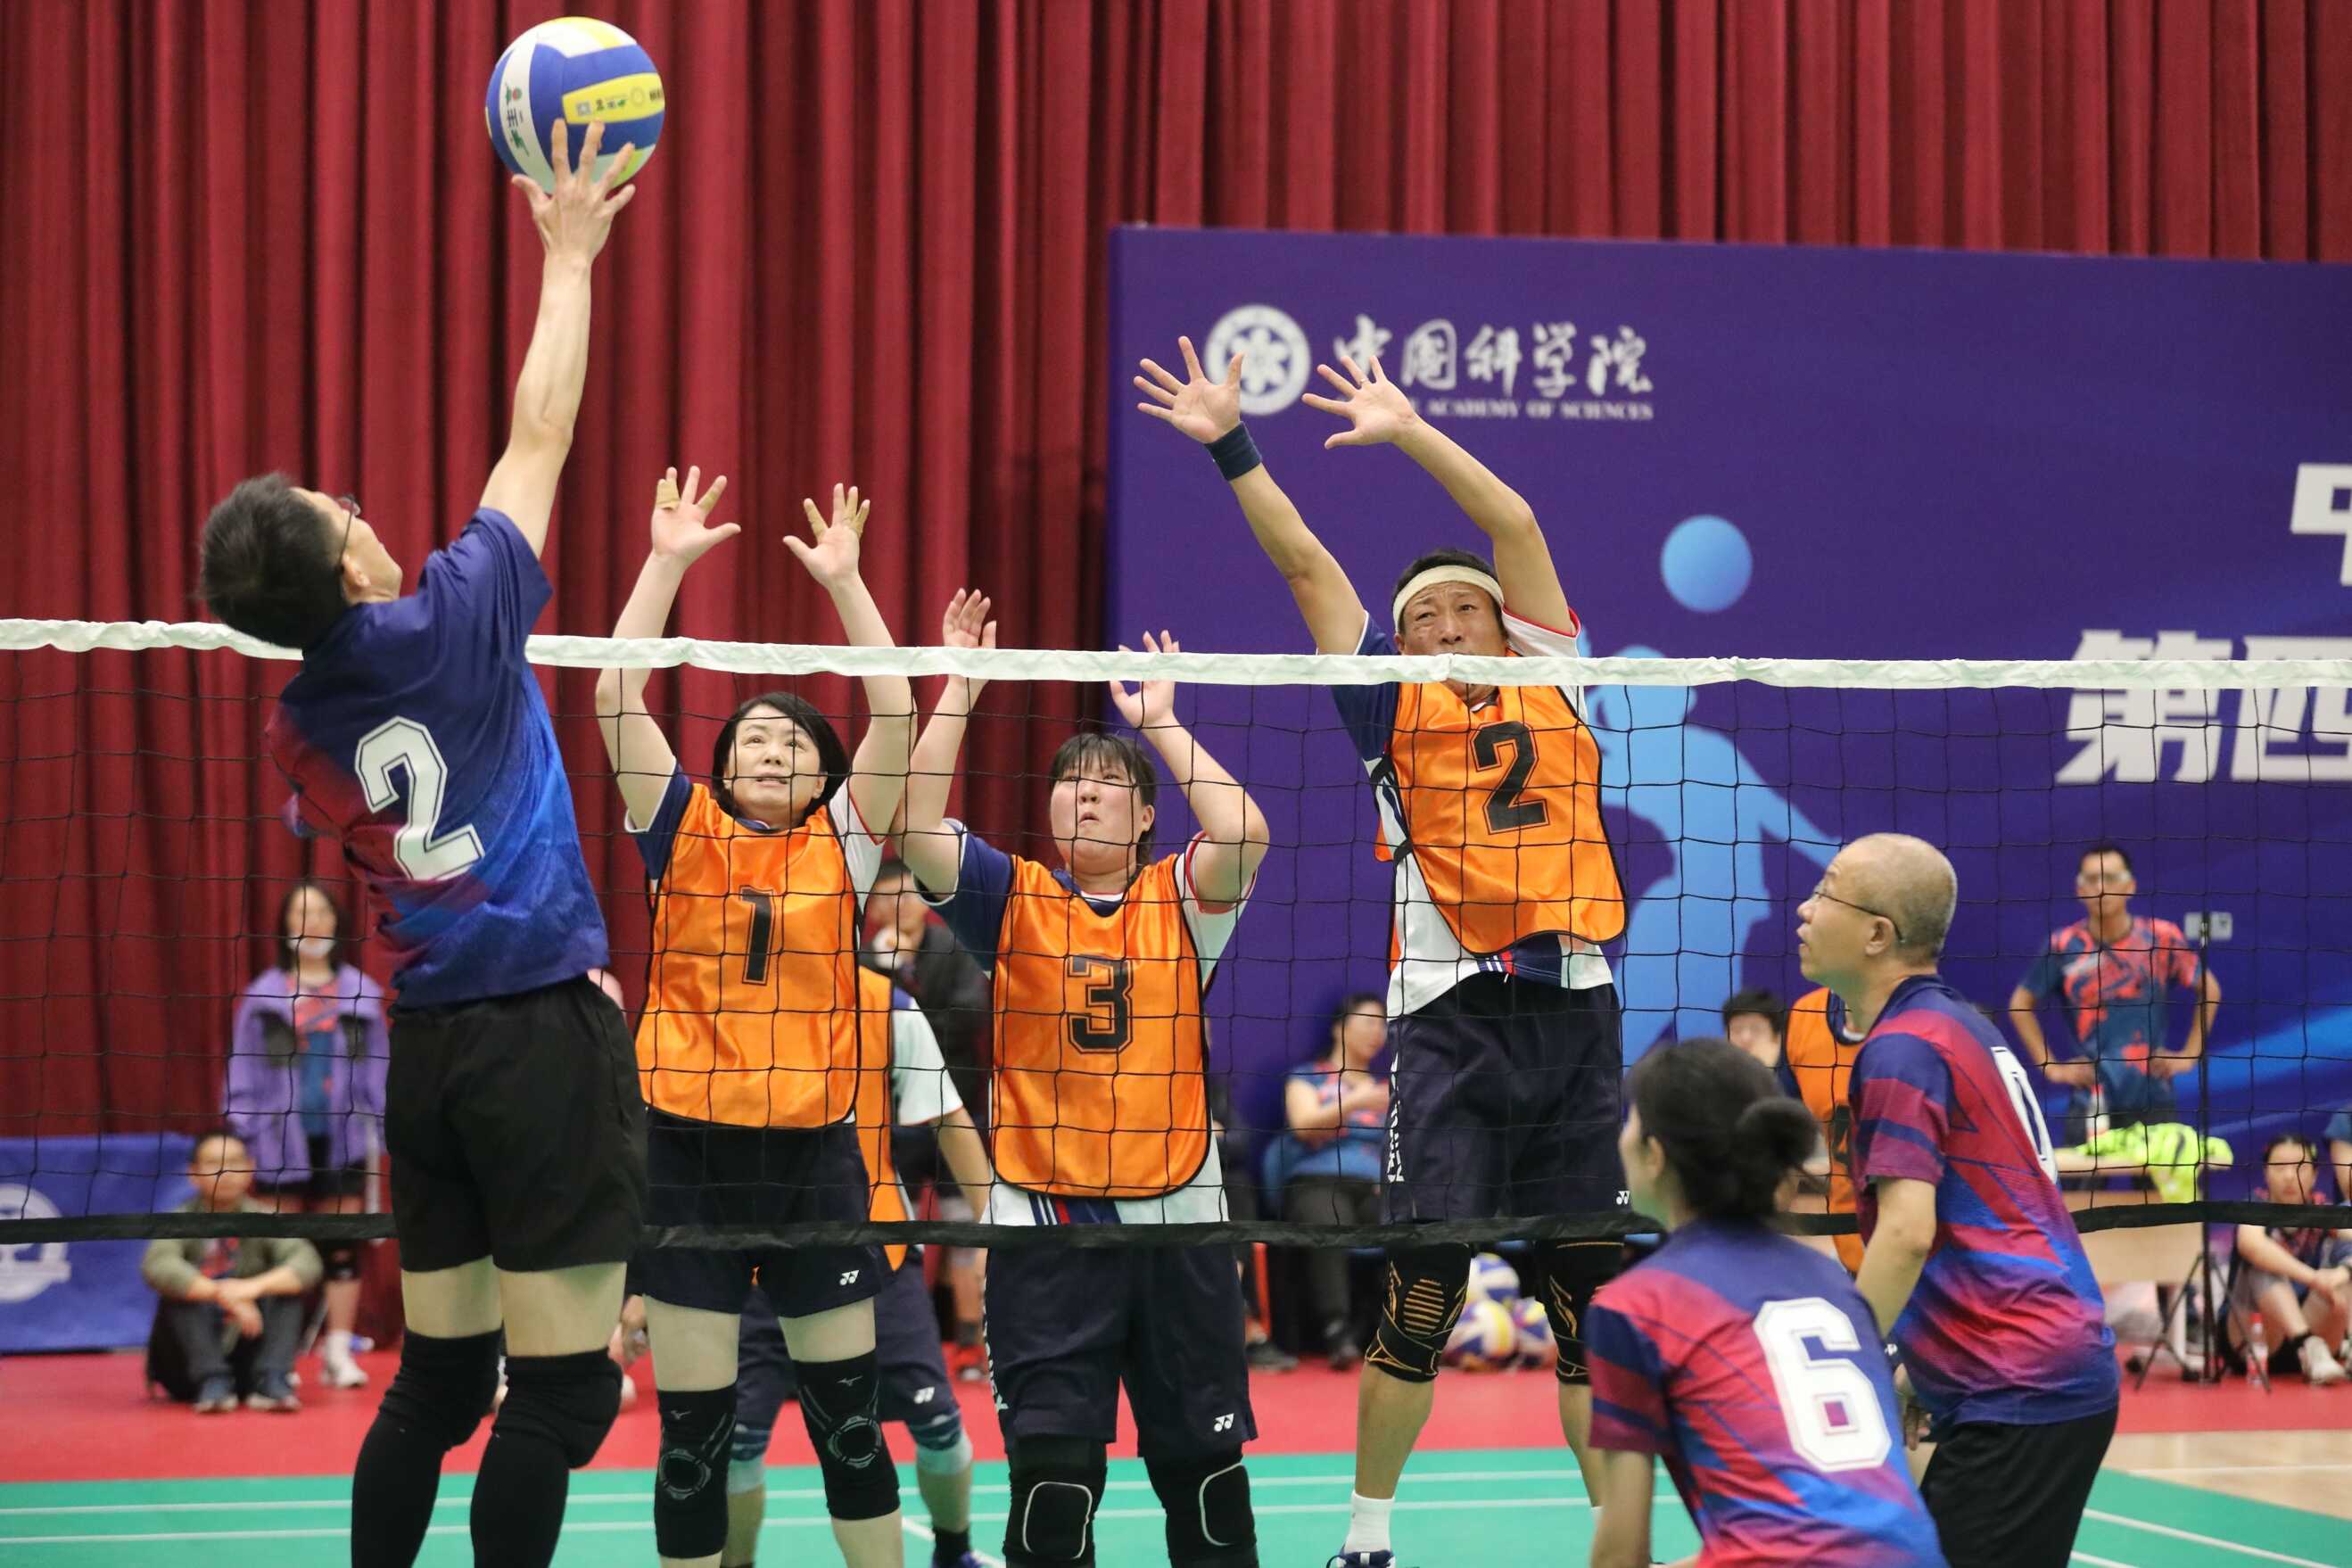 中國科學院舉辦“科苑杯”第四屆京區職工氣排球比賽